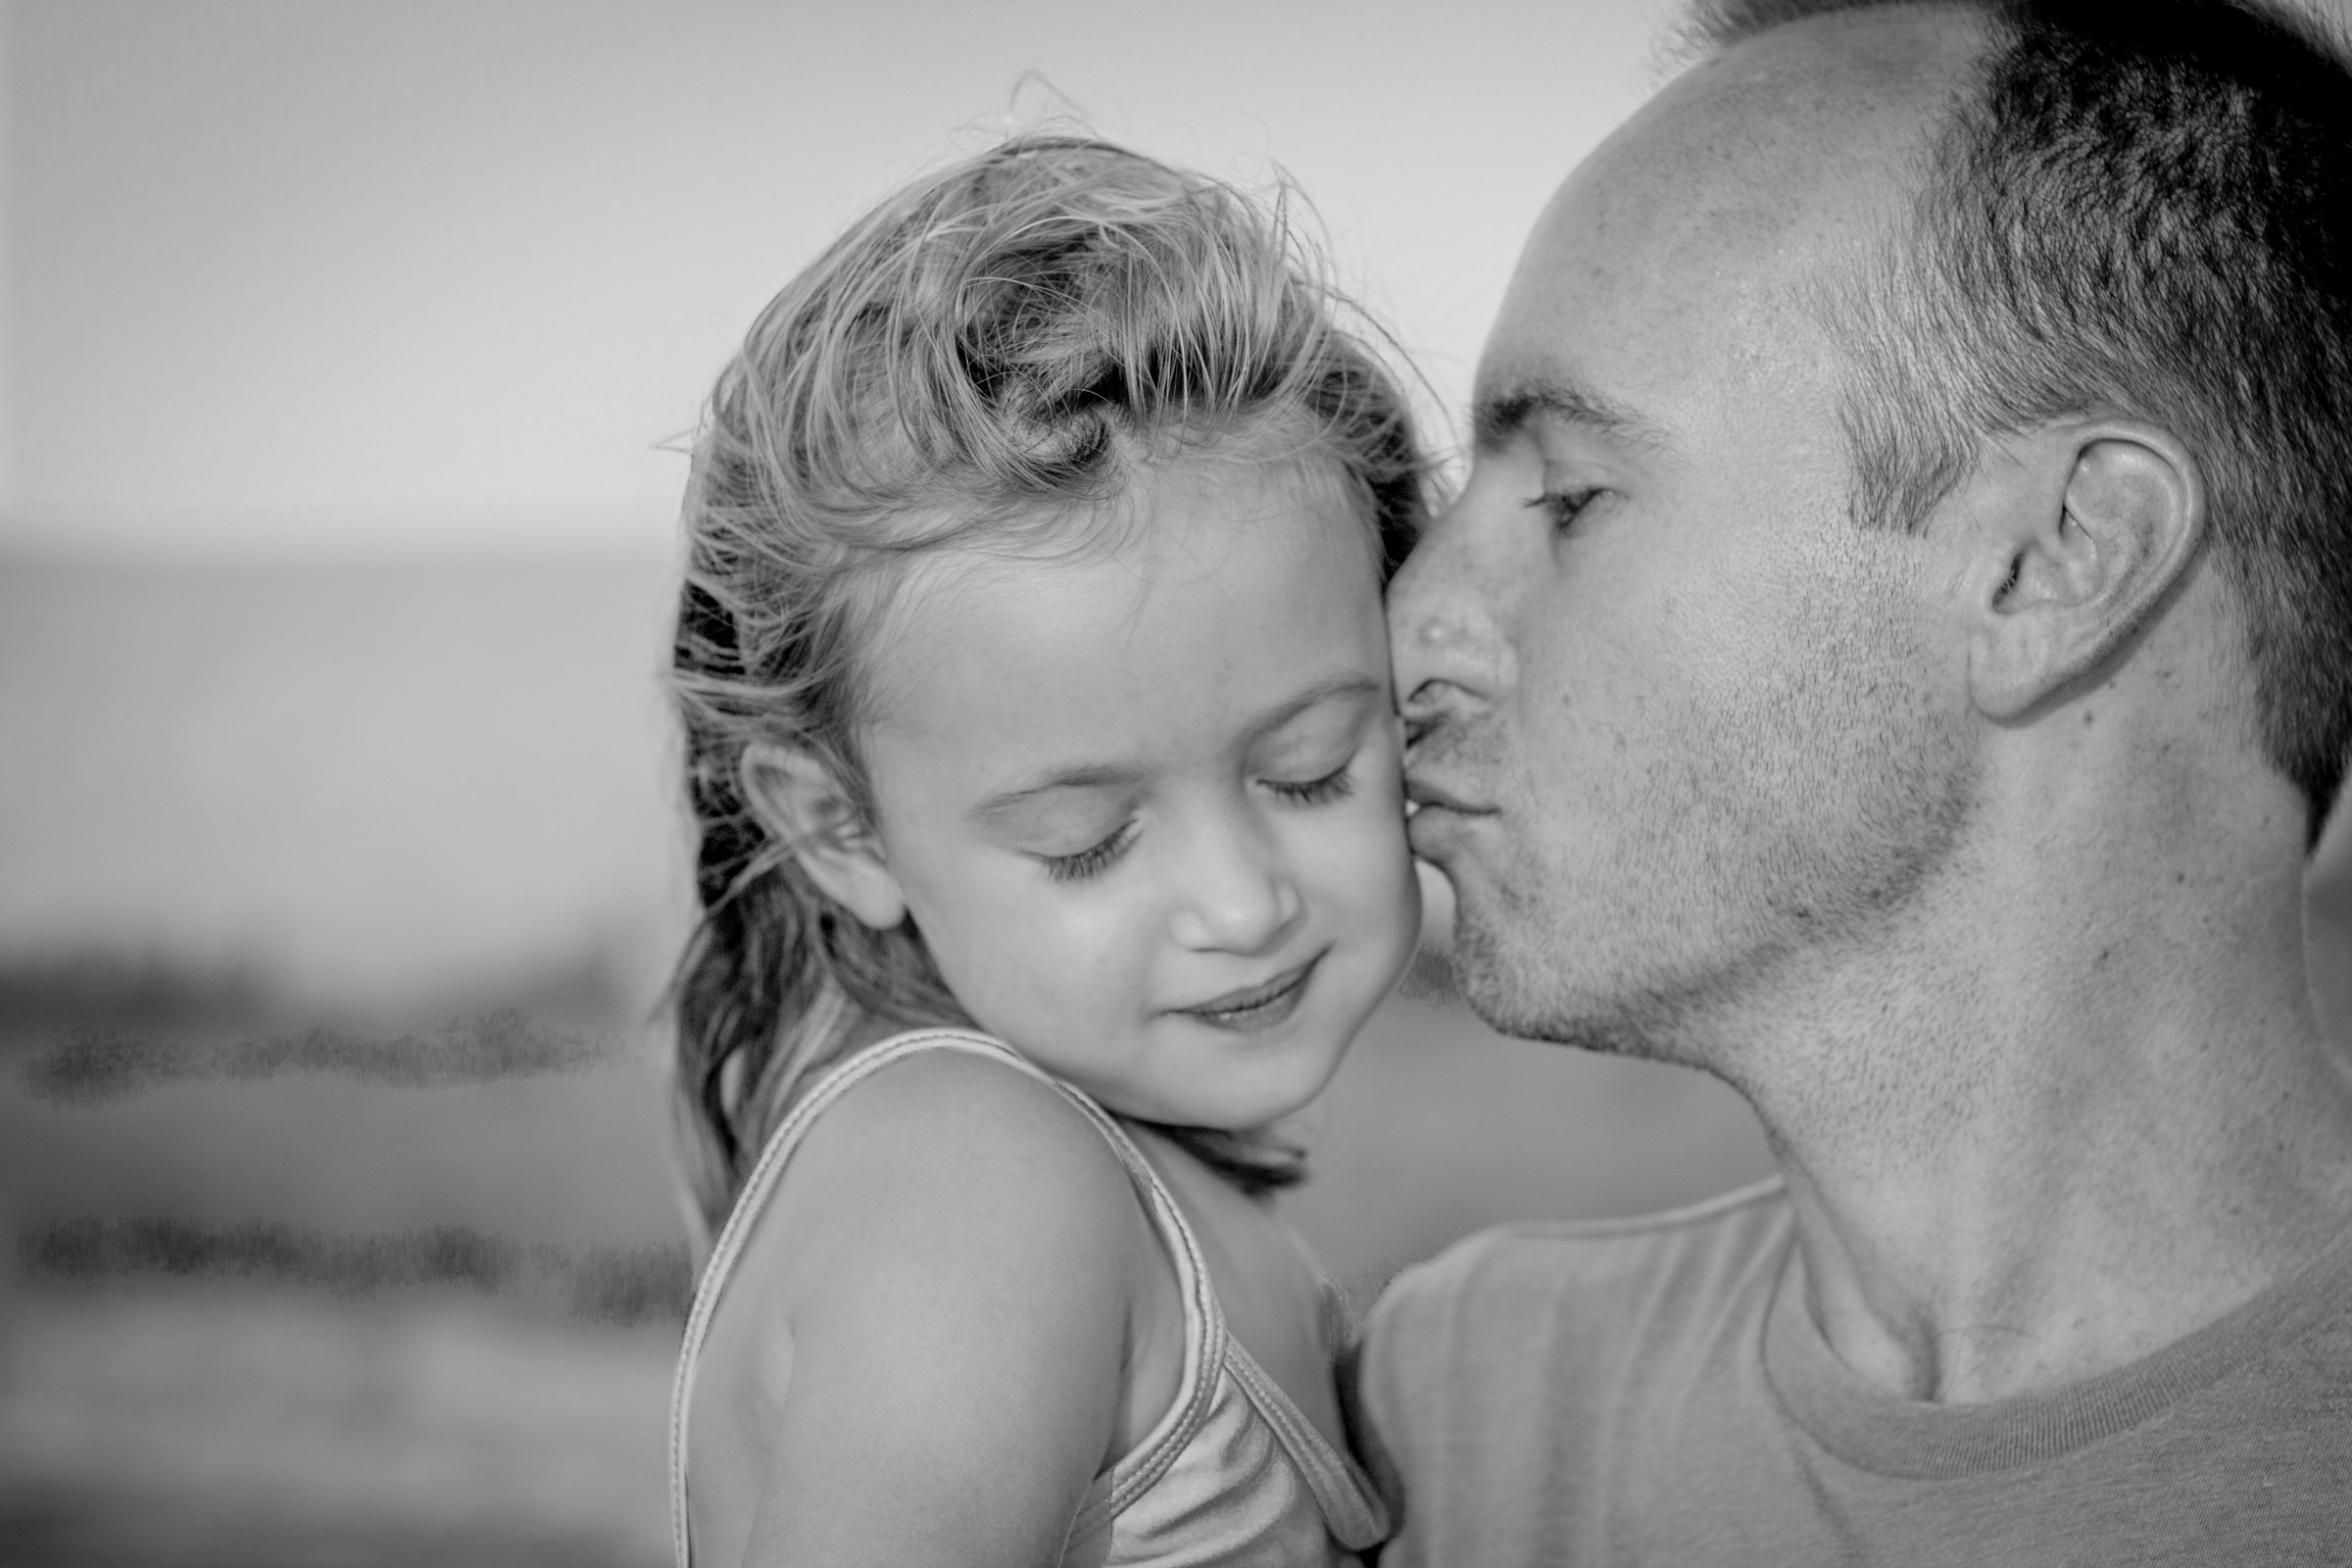 Père embrassant sa fille sur la joue | Source : Unsplash